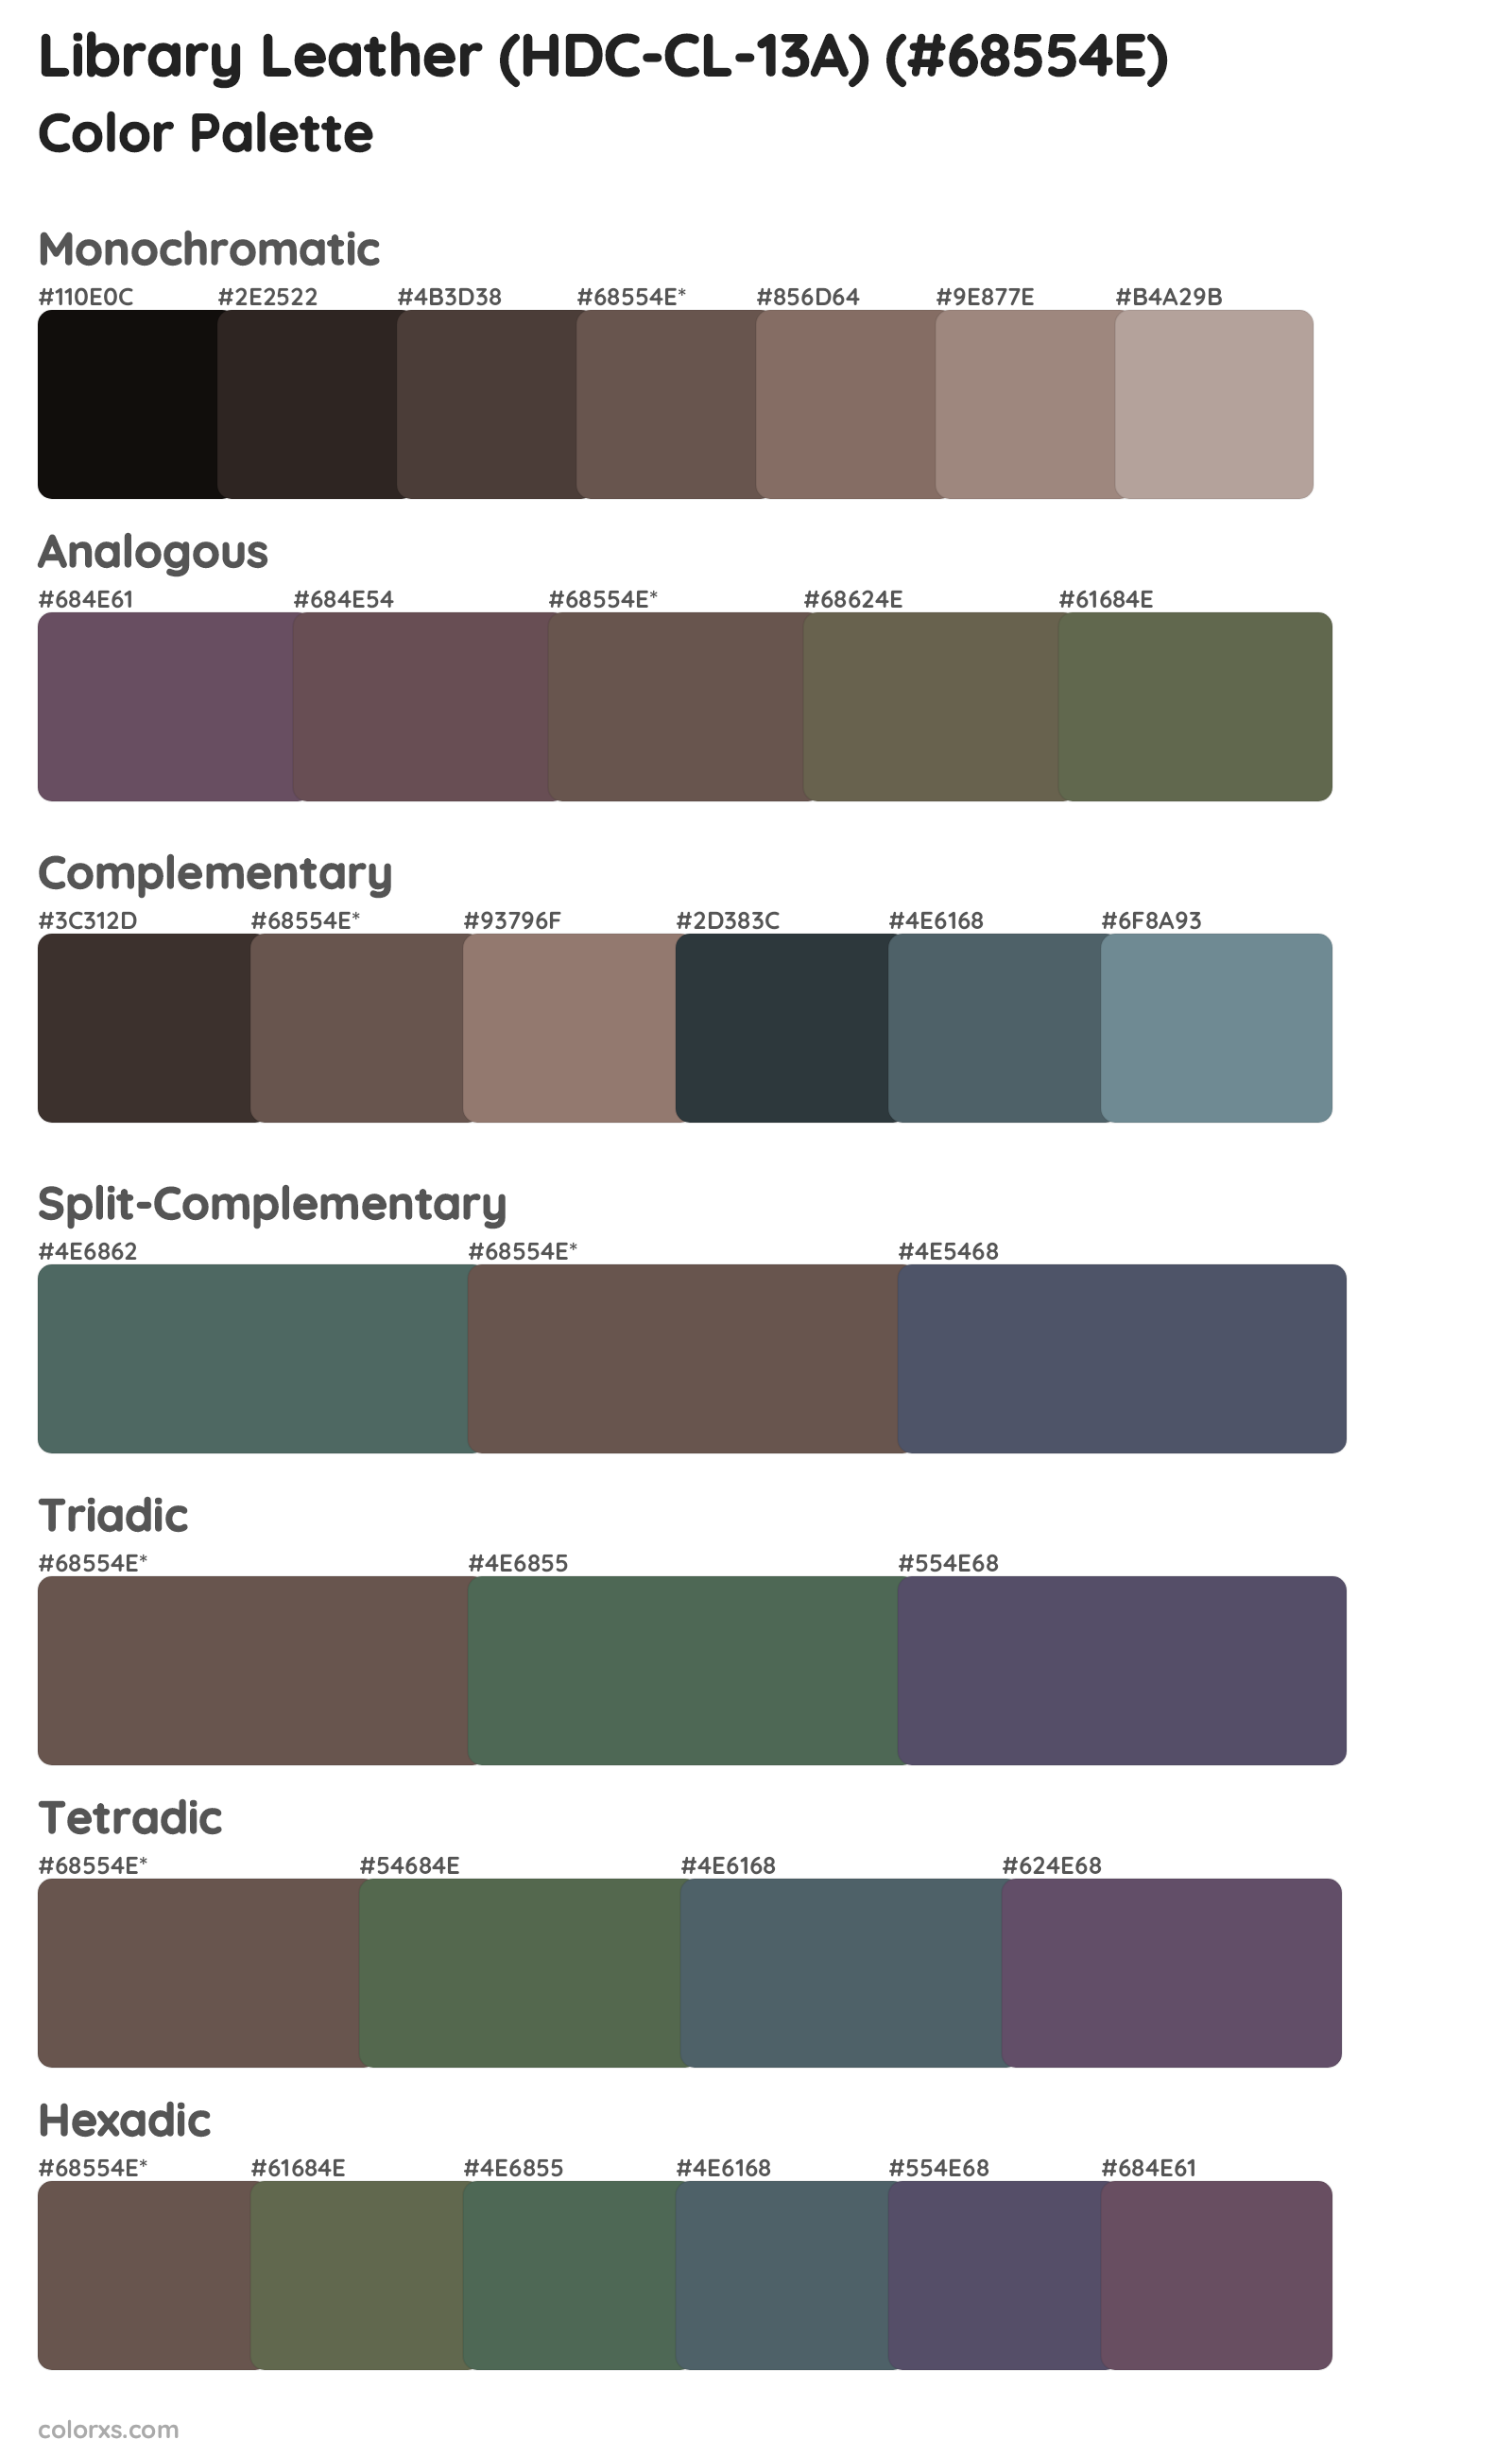 Library Leather (HDC-CL-13A) Color Scheme Palettes